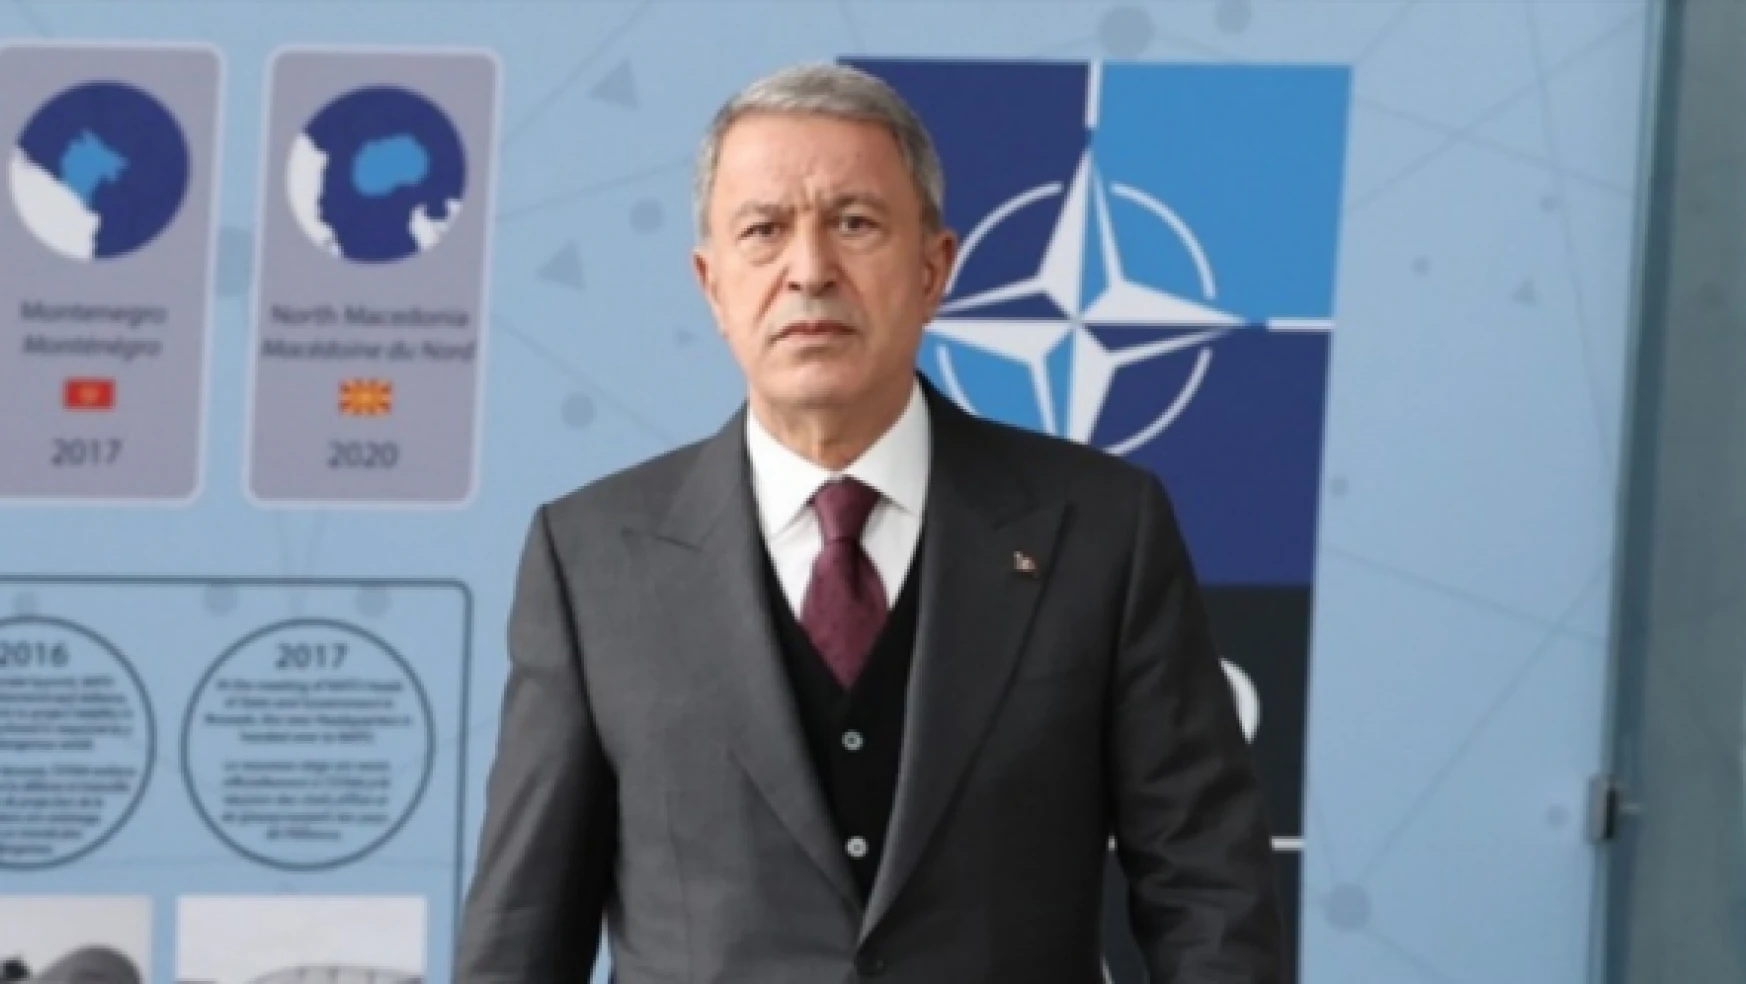 Milli Savunma Bakanı Akar, NATO toplantısı için Brüksel'e gidecek